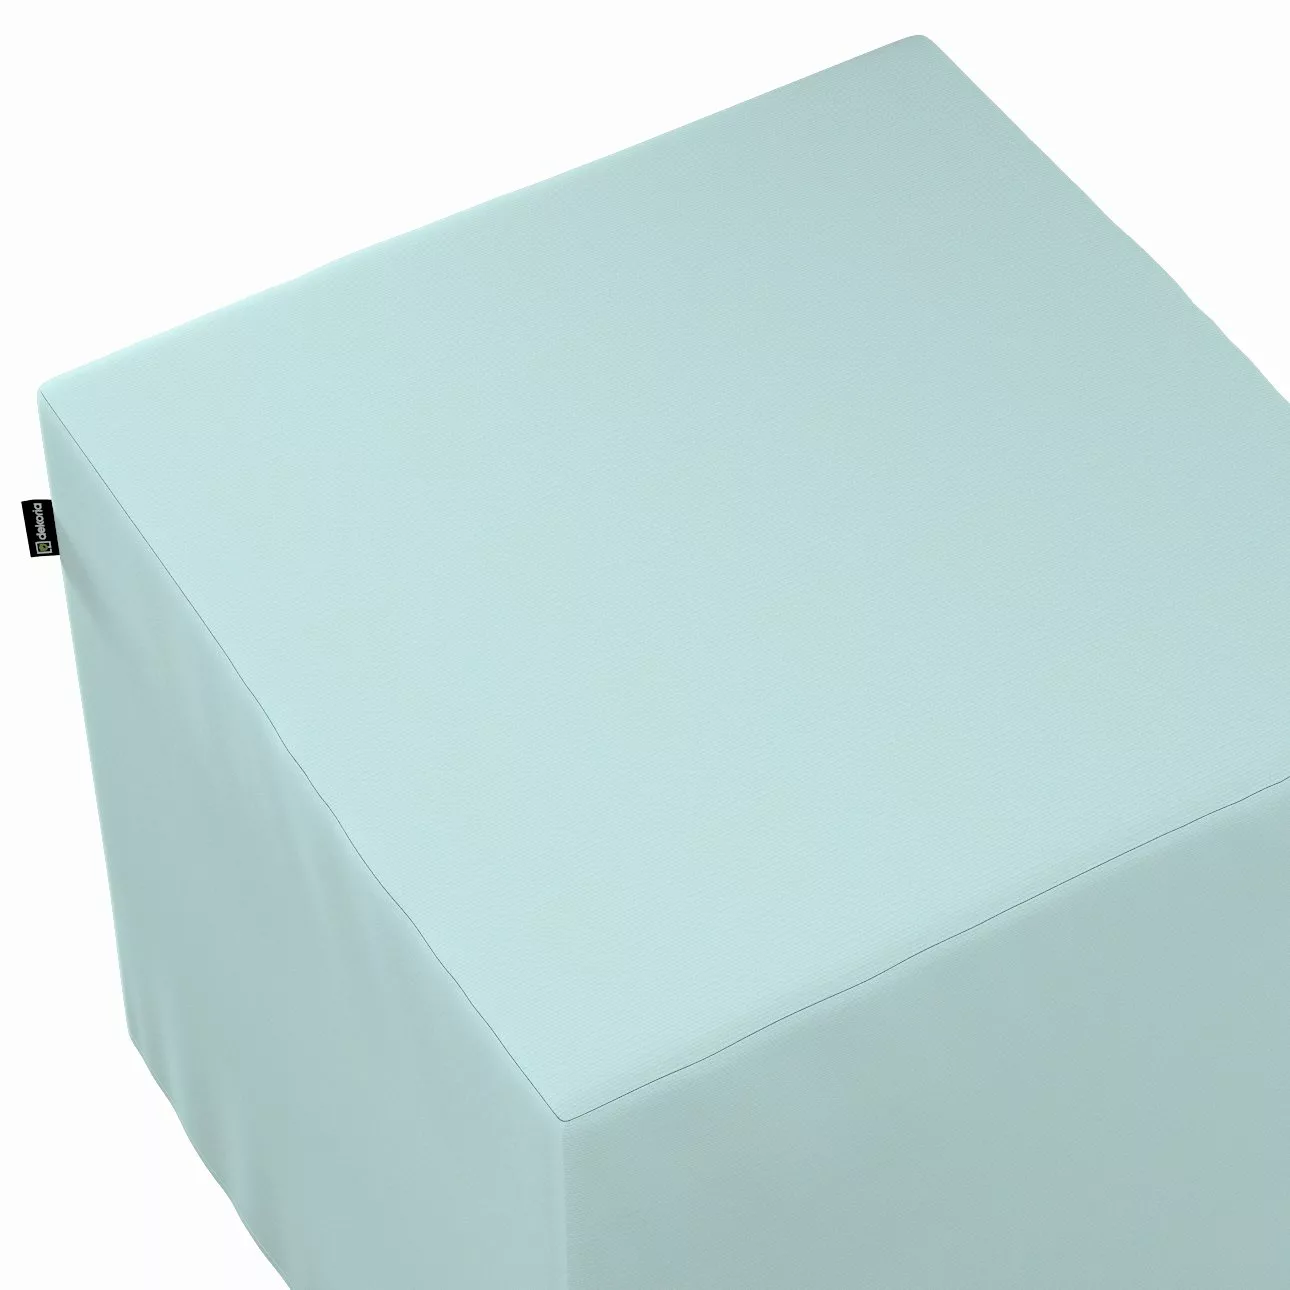 Bezug für Sitzwürfel, hellblau, Bezug für Sitzwürfel 40 x 40 x 40 cm, Cotto günstig online kaufen